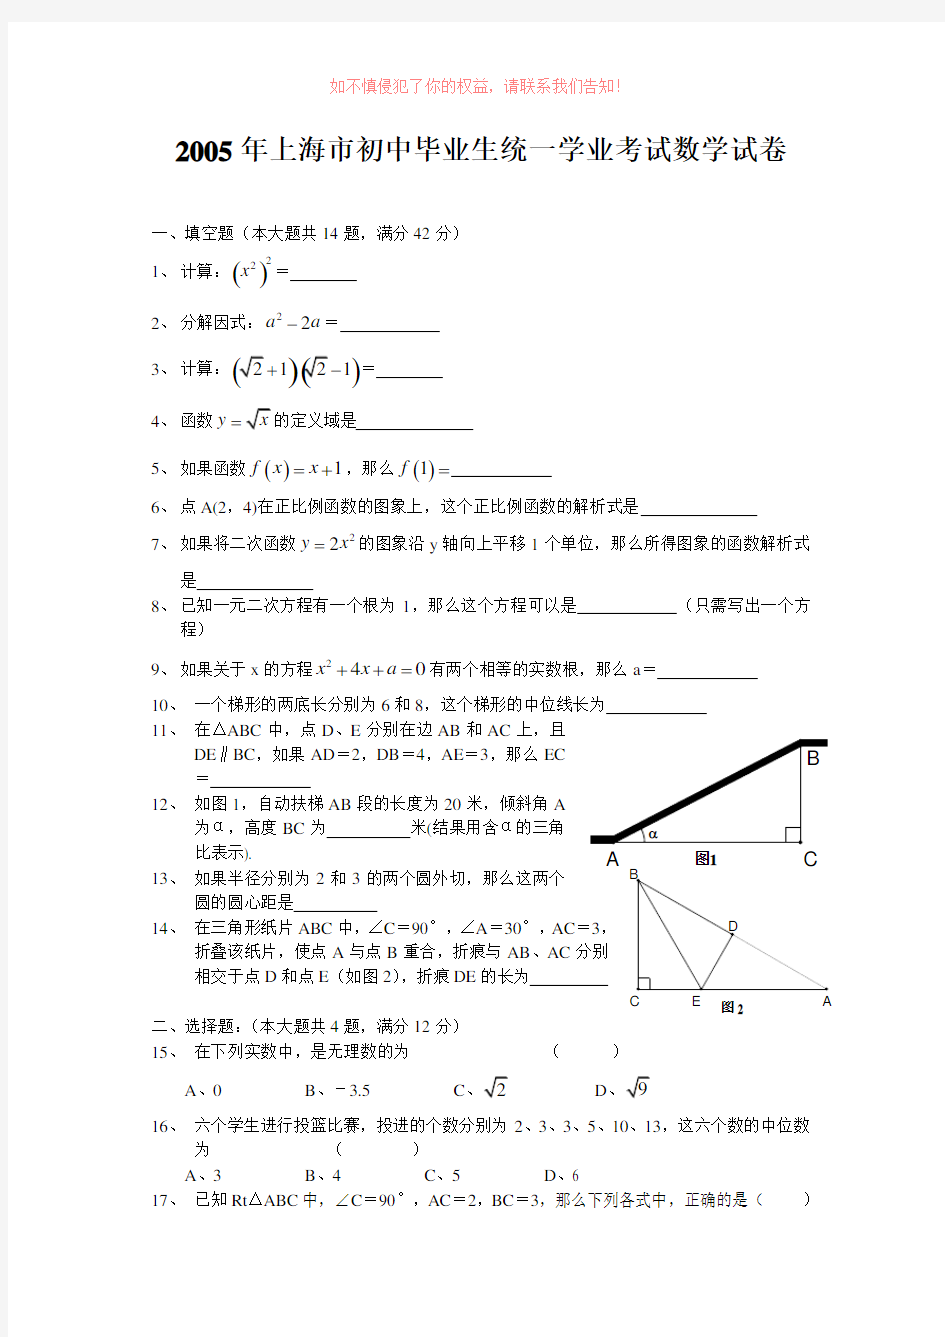 中考数学真题上海市初中生统一学业考试数学试卷含详细答案